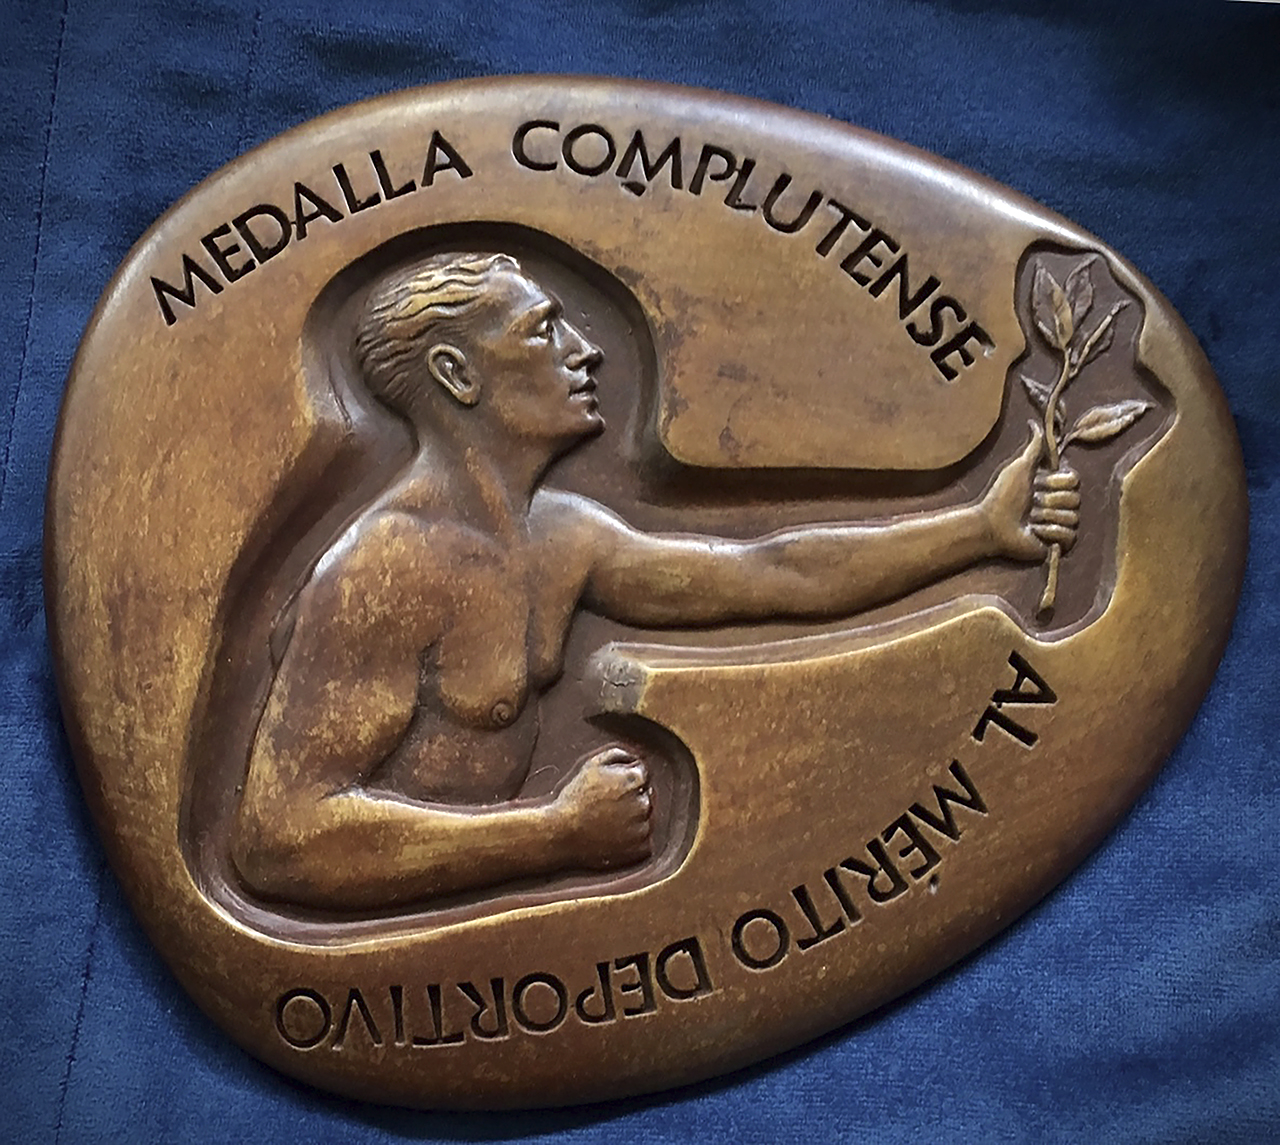 Medalla al Mérito Deportivo de la Complutense, realizada por Horacio Romero